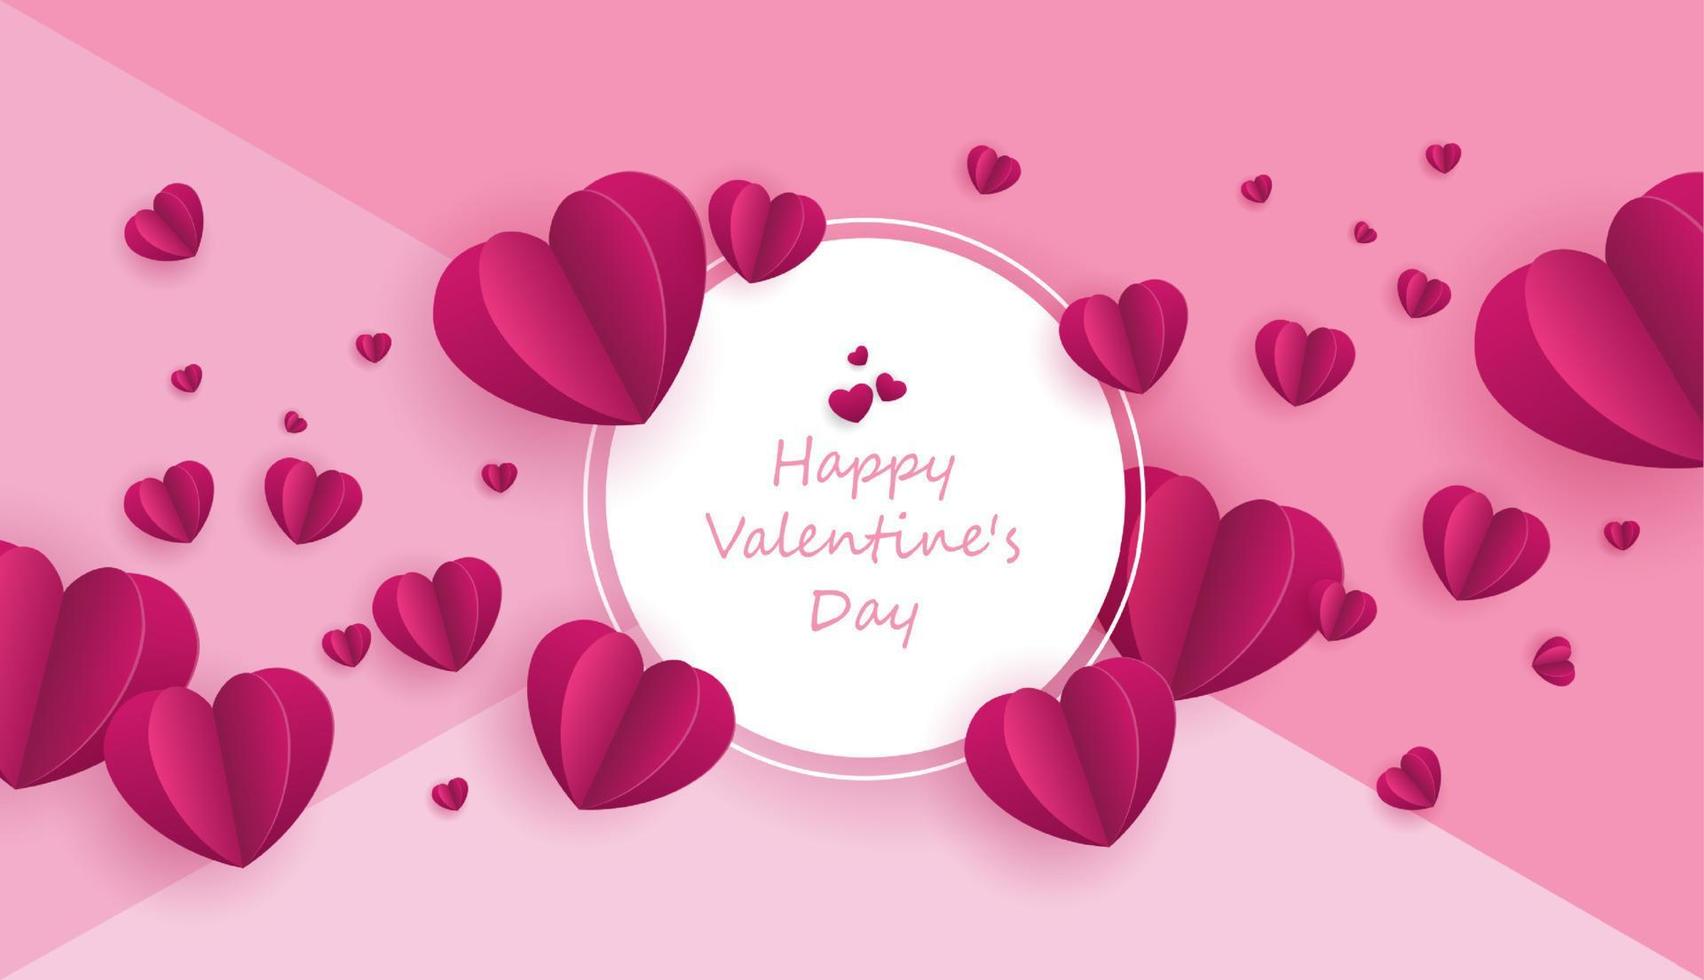 papieren kunst van liefde en valentijnsdag met papieren hart aan de blauwe lucht. kan worden gebruikt voor behang, uitnodiging, posters, banners. vector ontwerp